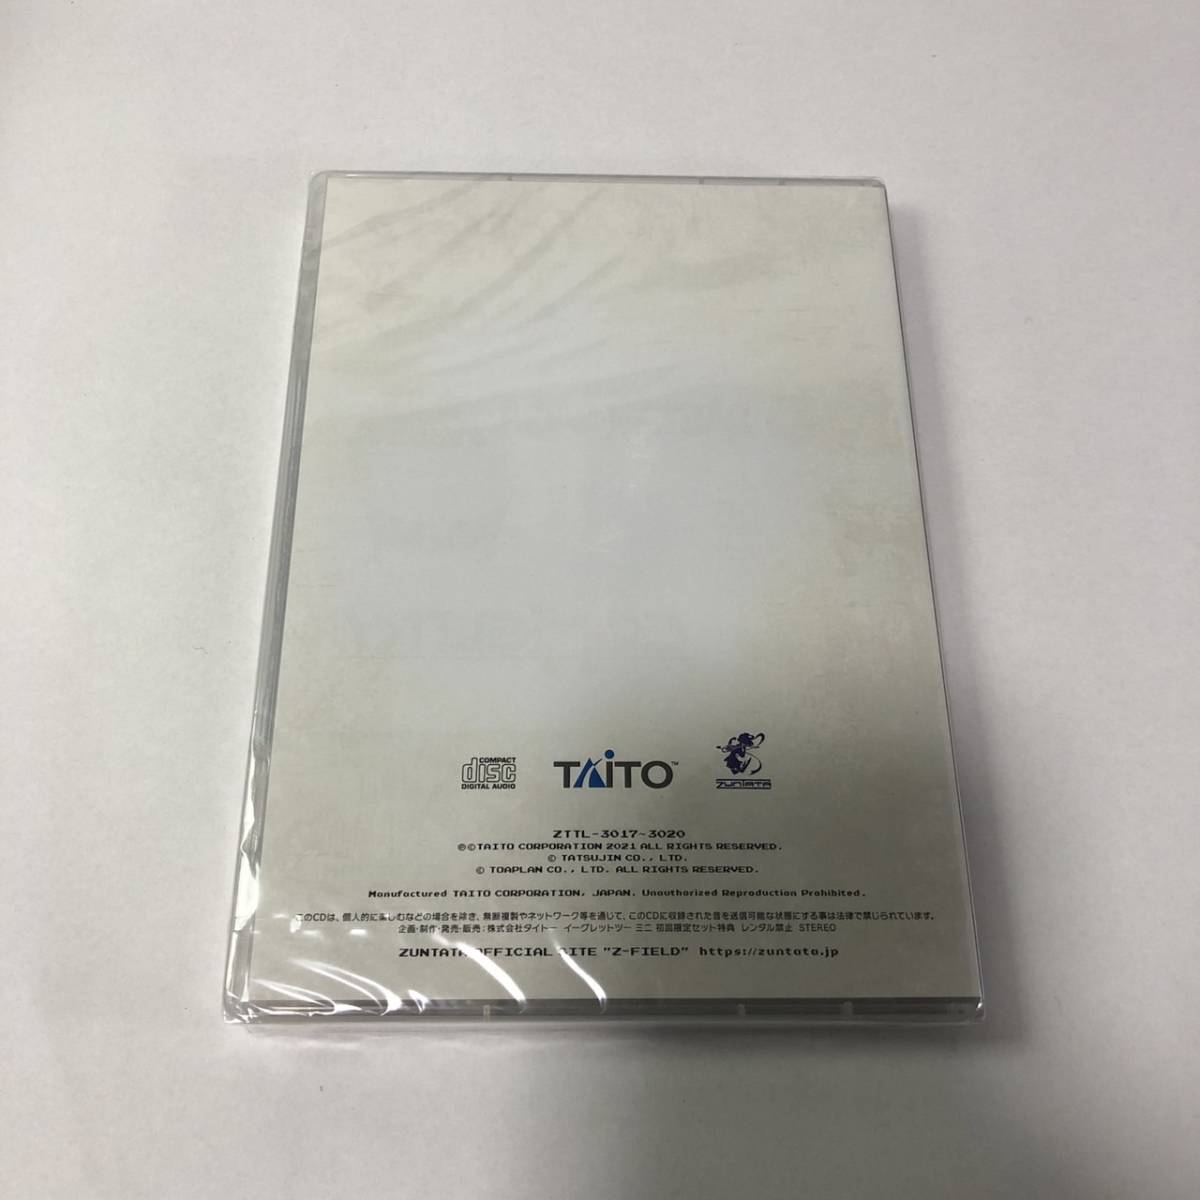 タイトー イーグレットツーミニ 限定版特典CD 70/35 TAITO 70th ZUNTATA 35th Anniversaryの画像3